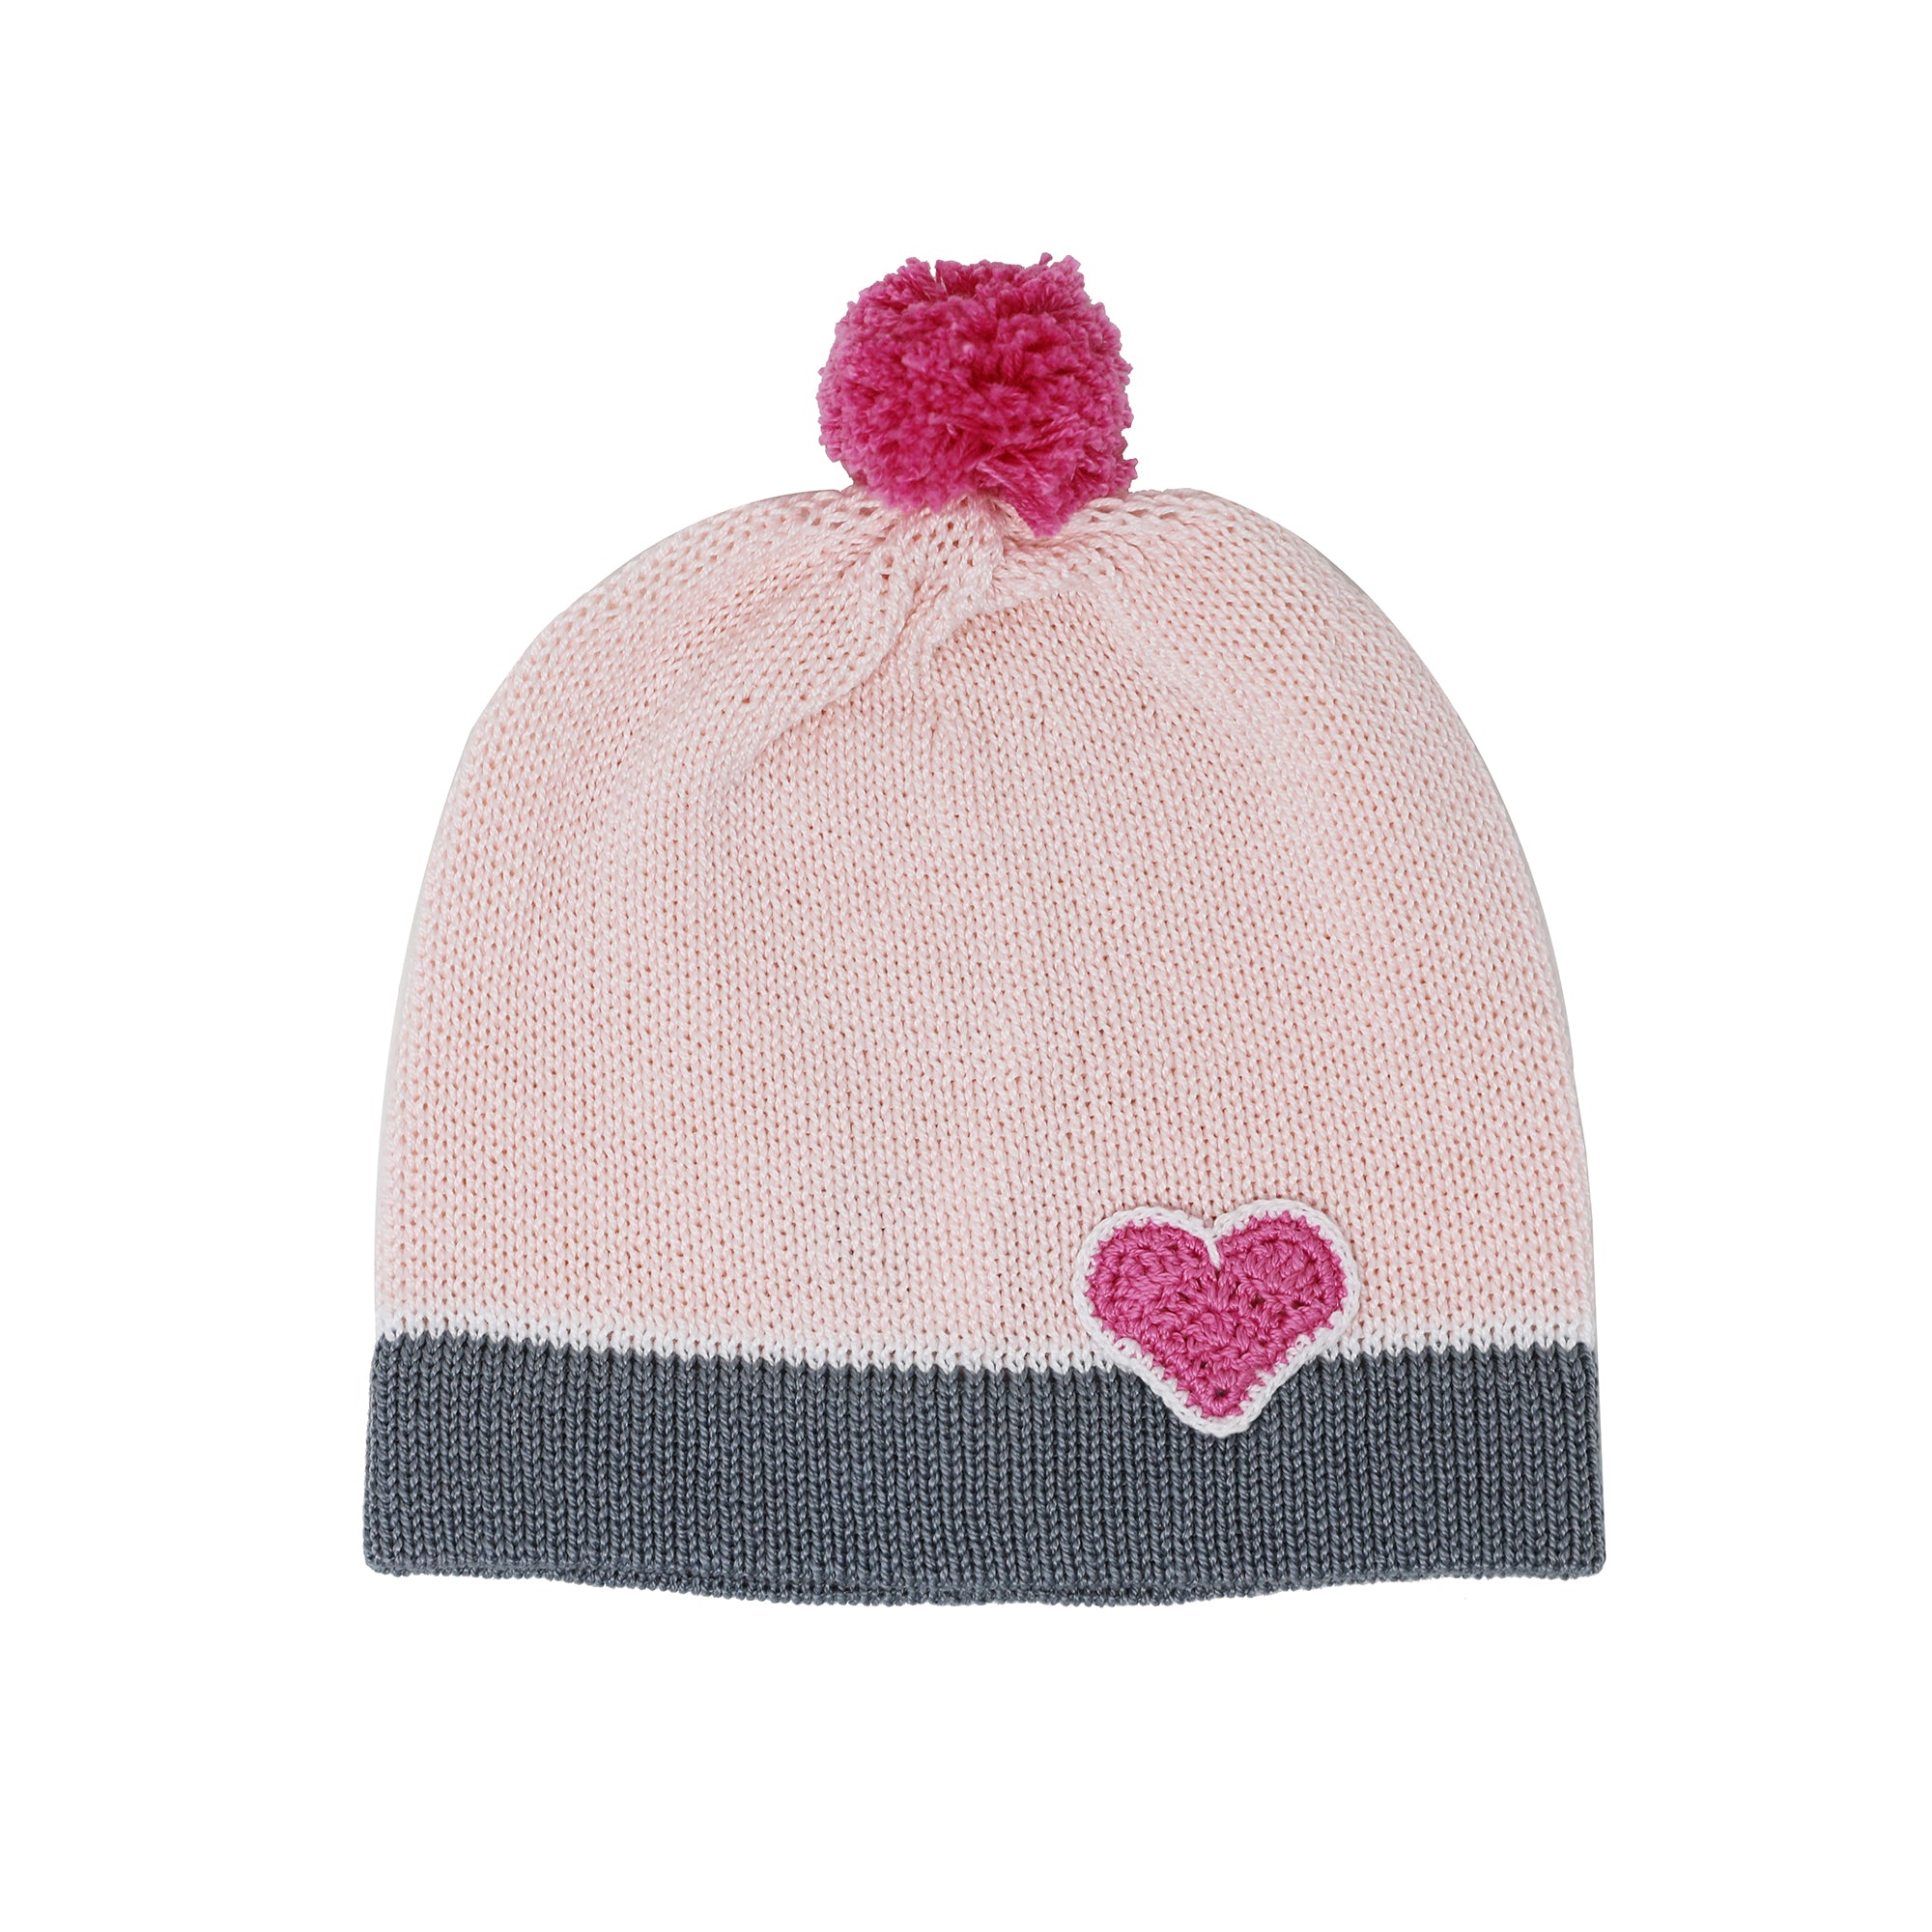 Valentine Baby Hat, pink